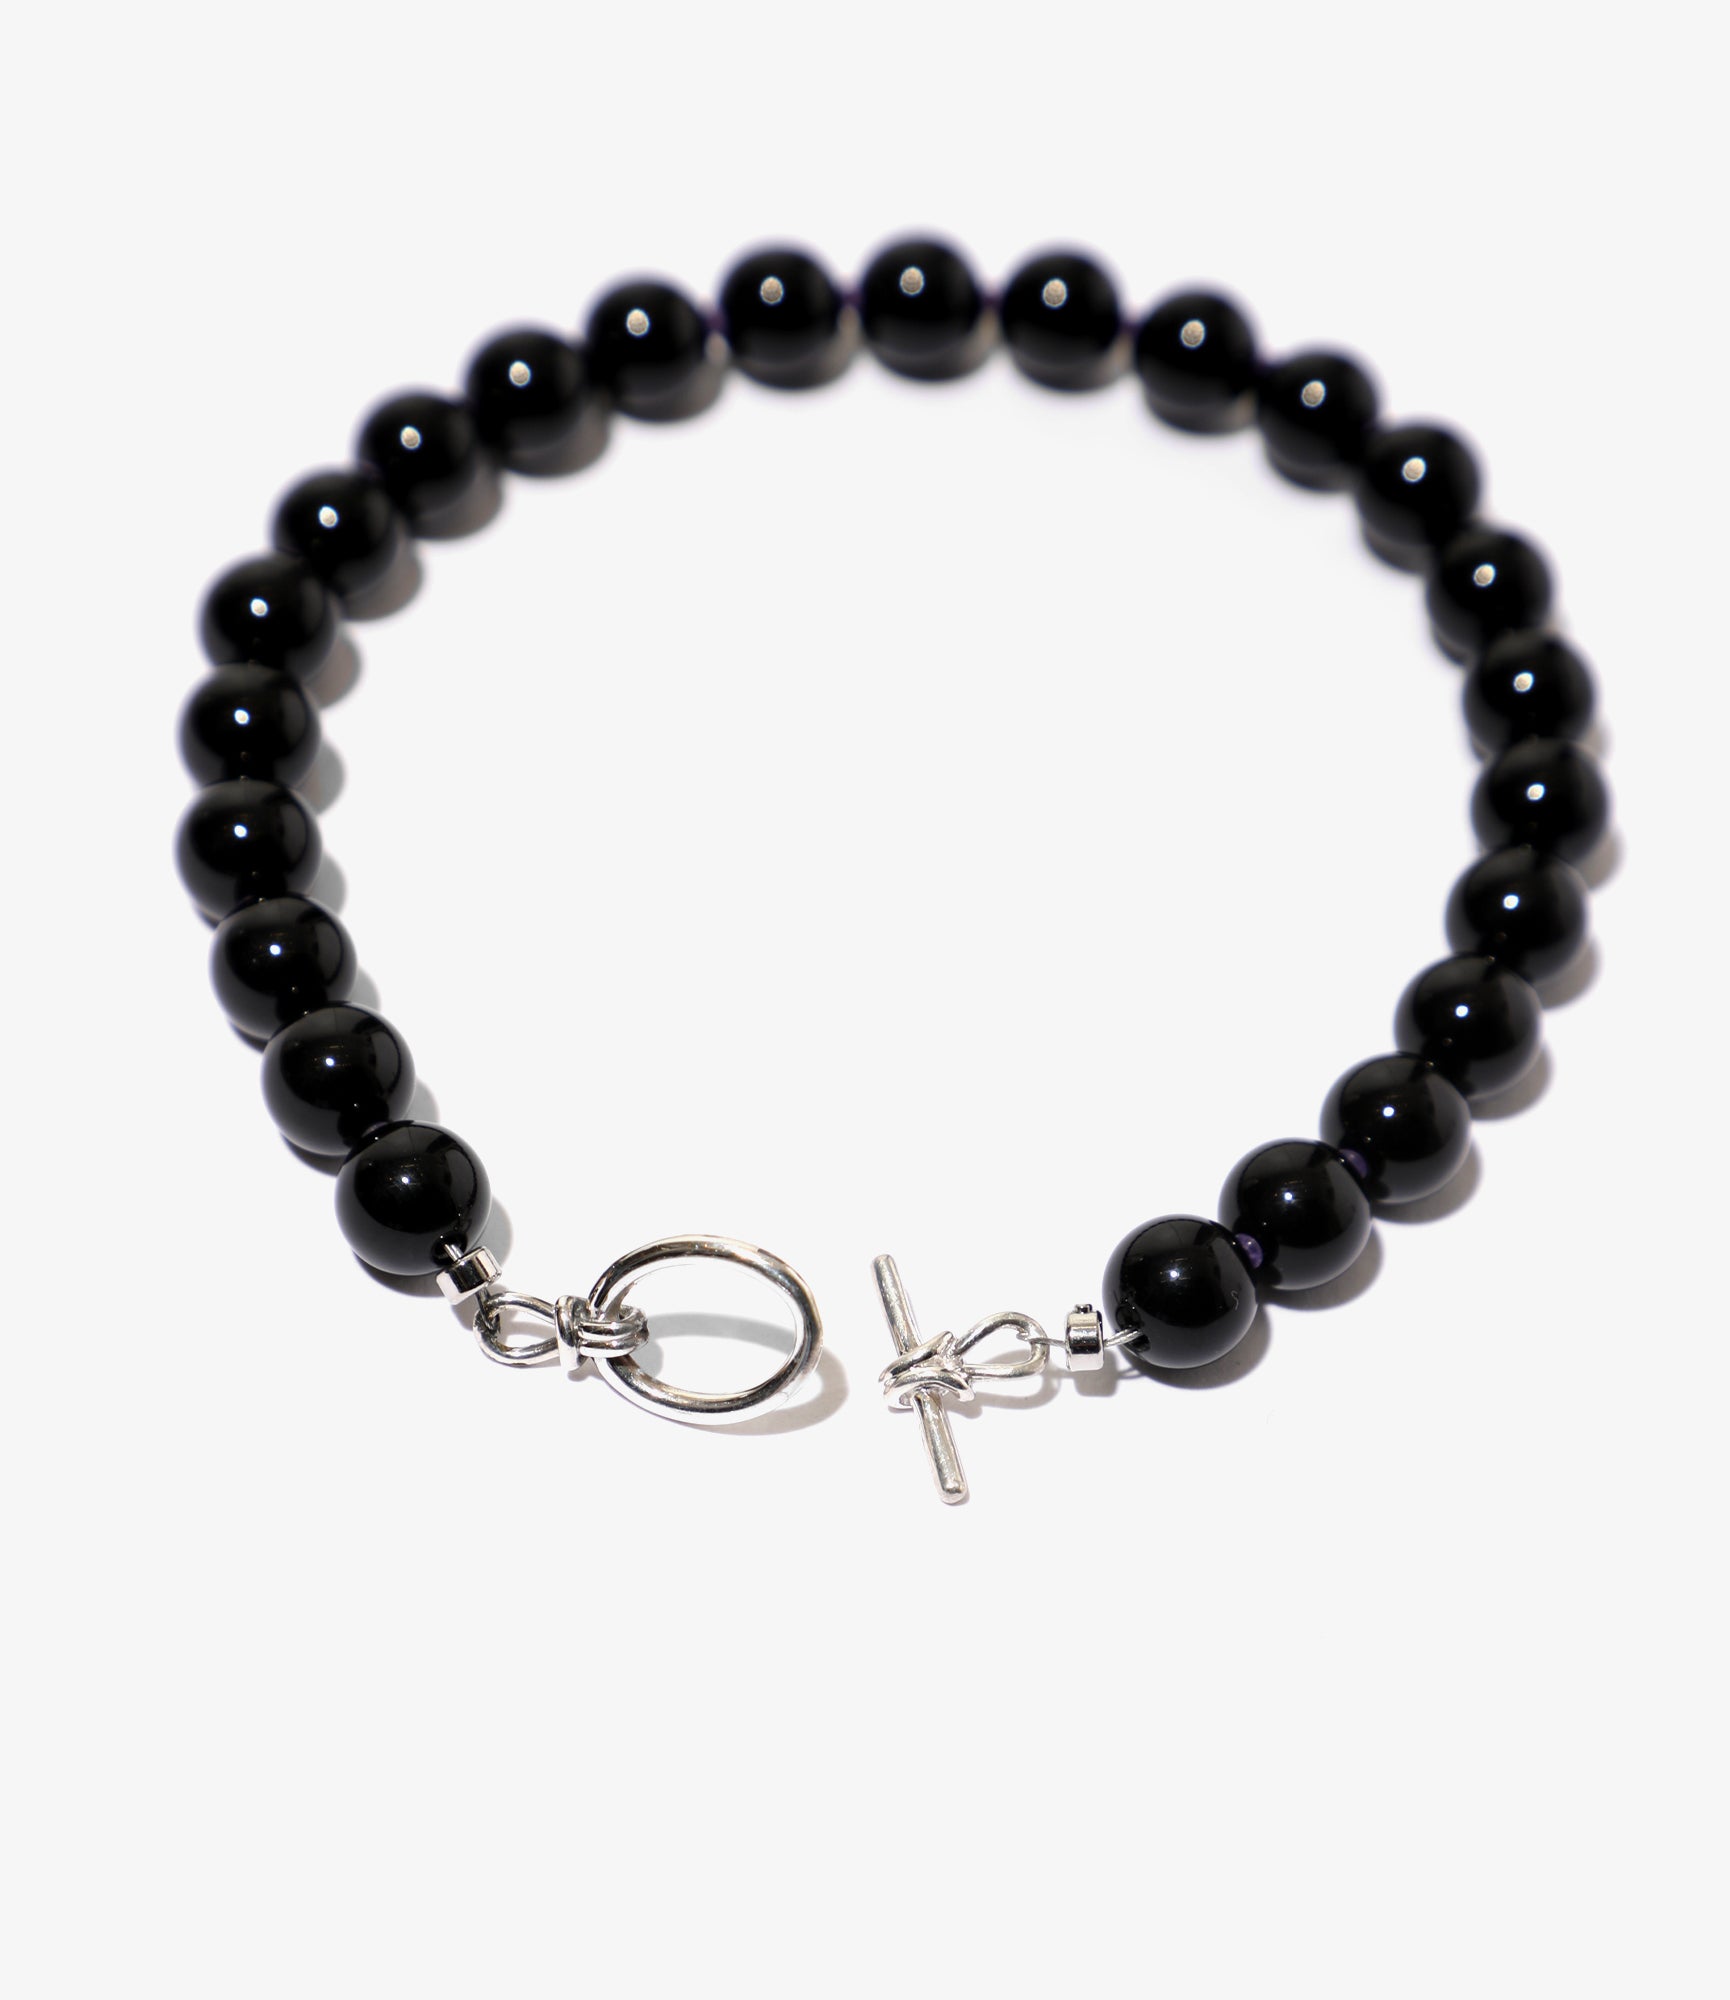 Grade A Black Onyx Crystal Bead Bracelet 8mm, Genuine Black Onyx Gemstone  Bracelet, Grounding, Protection Stones, Gift for Men & Women - Etsy